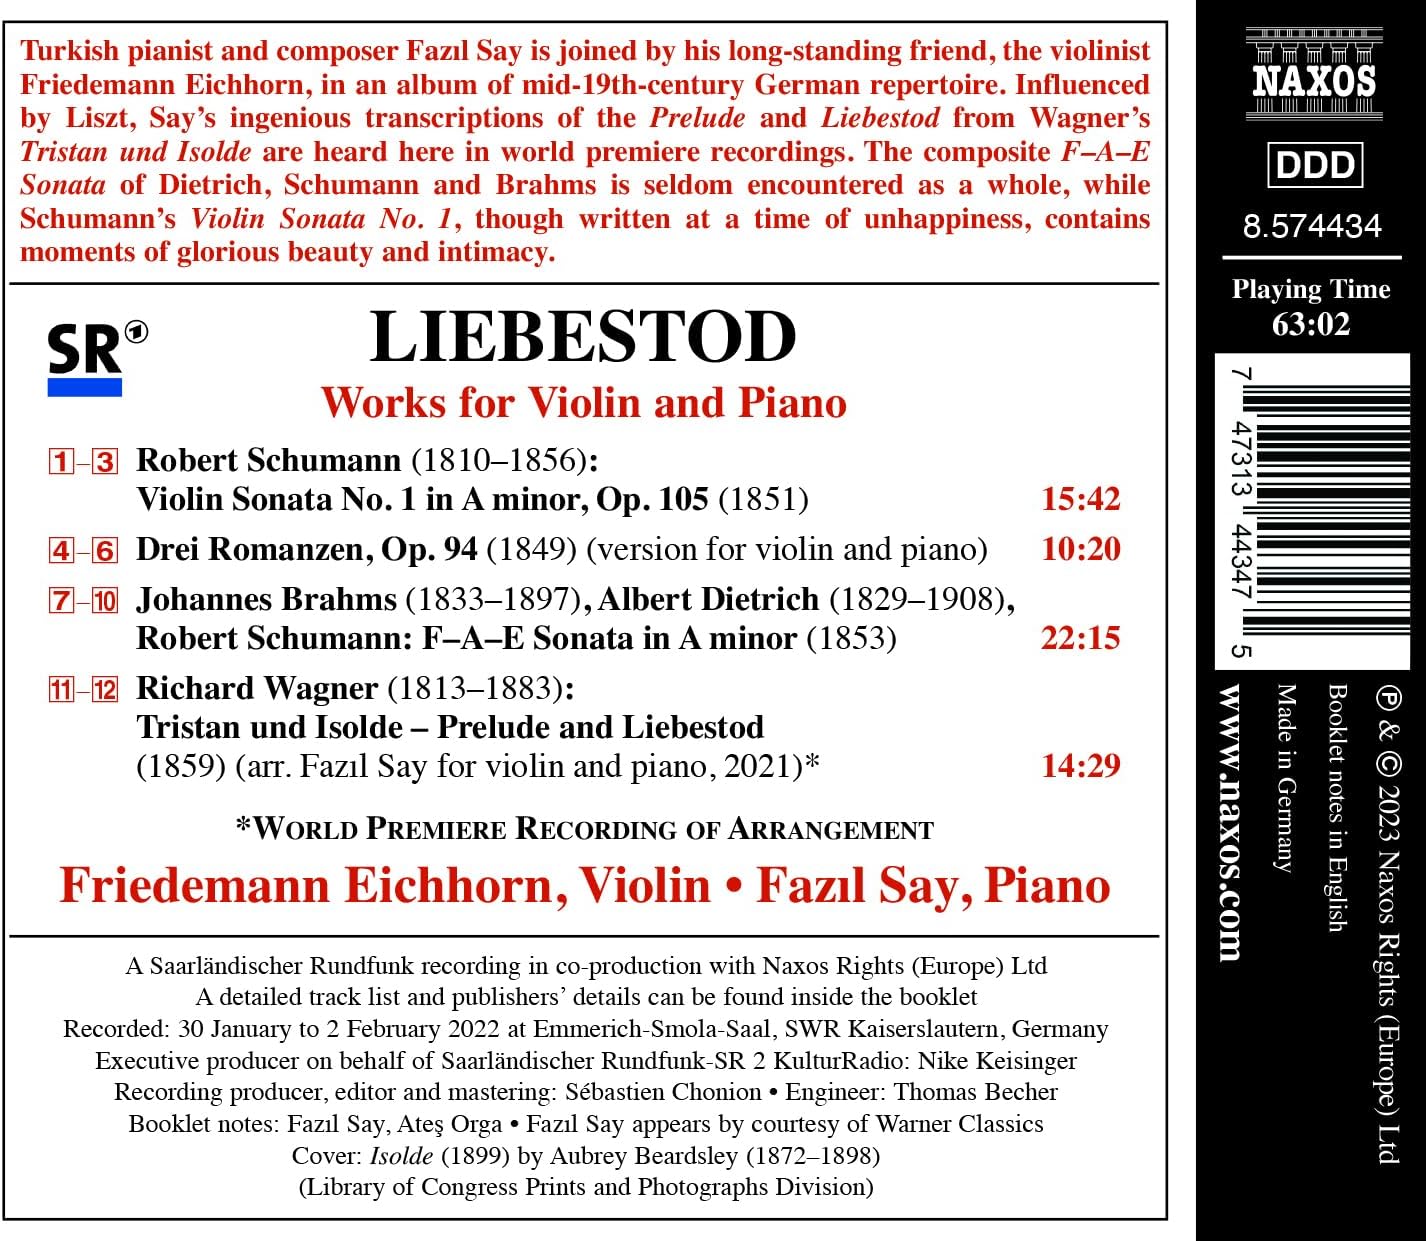 Friedemann Eichhorn / Fazıl Say 바이올린과 피아노 리사이틀 - 19세기 독일 낭만주의 절정의 순간들 (Liebestod - Works for Violin and Piano)